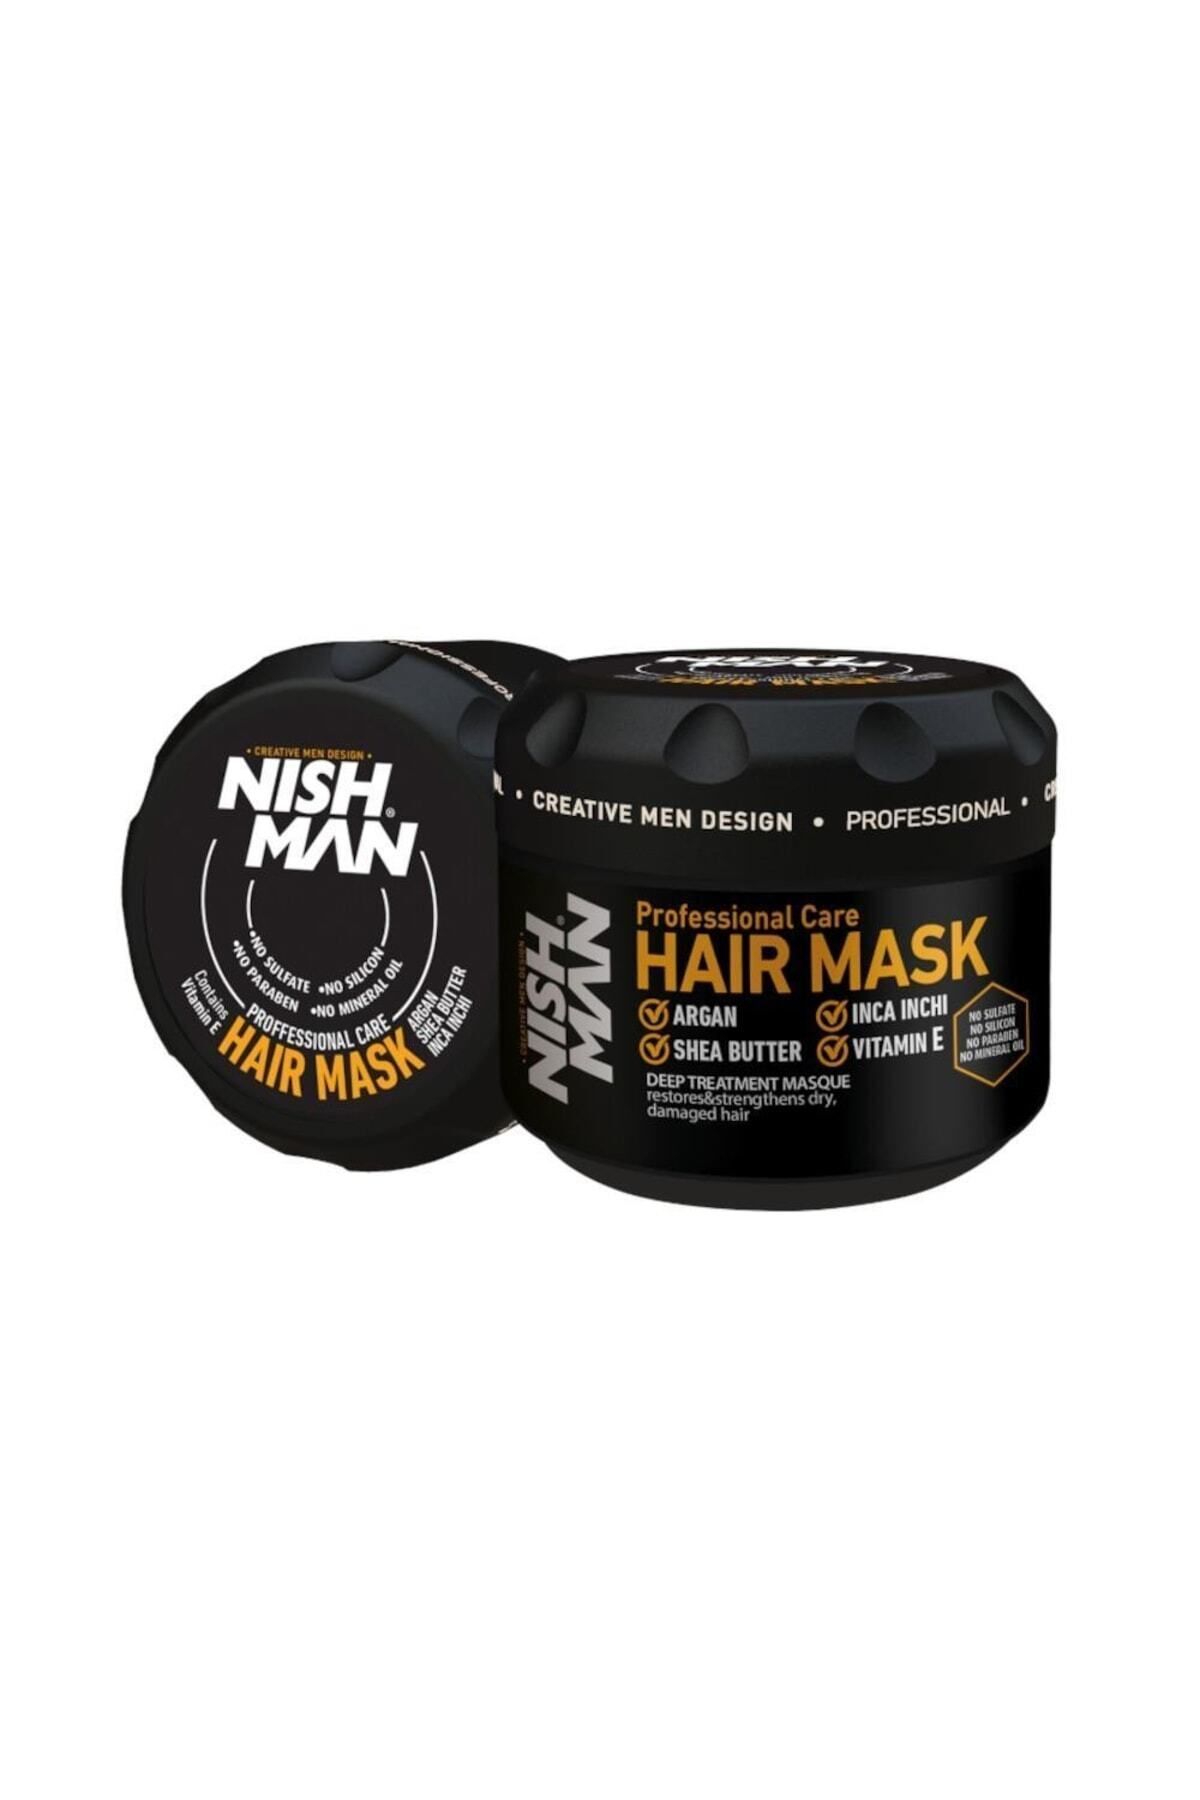 NISHMAN Nish Man Argan Hair Mask 300 Ml